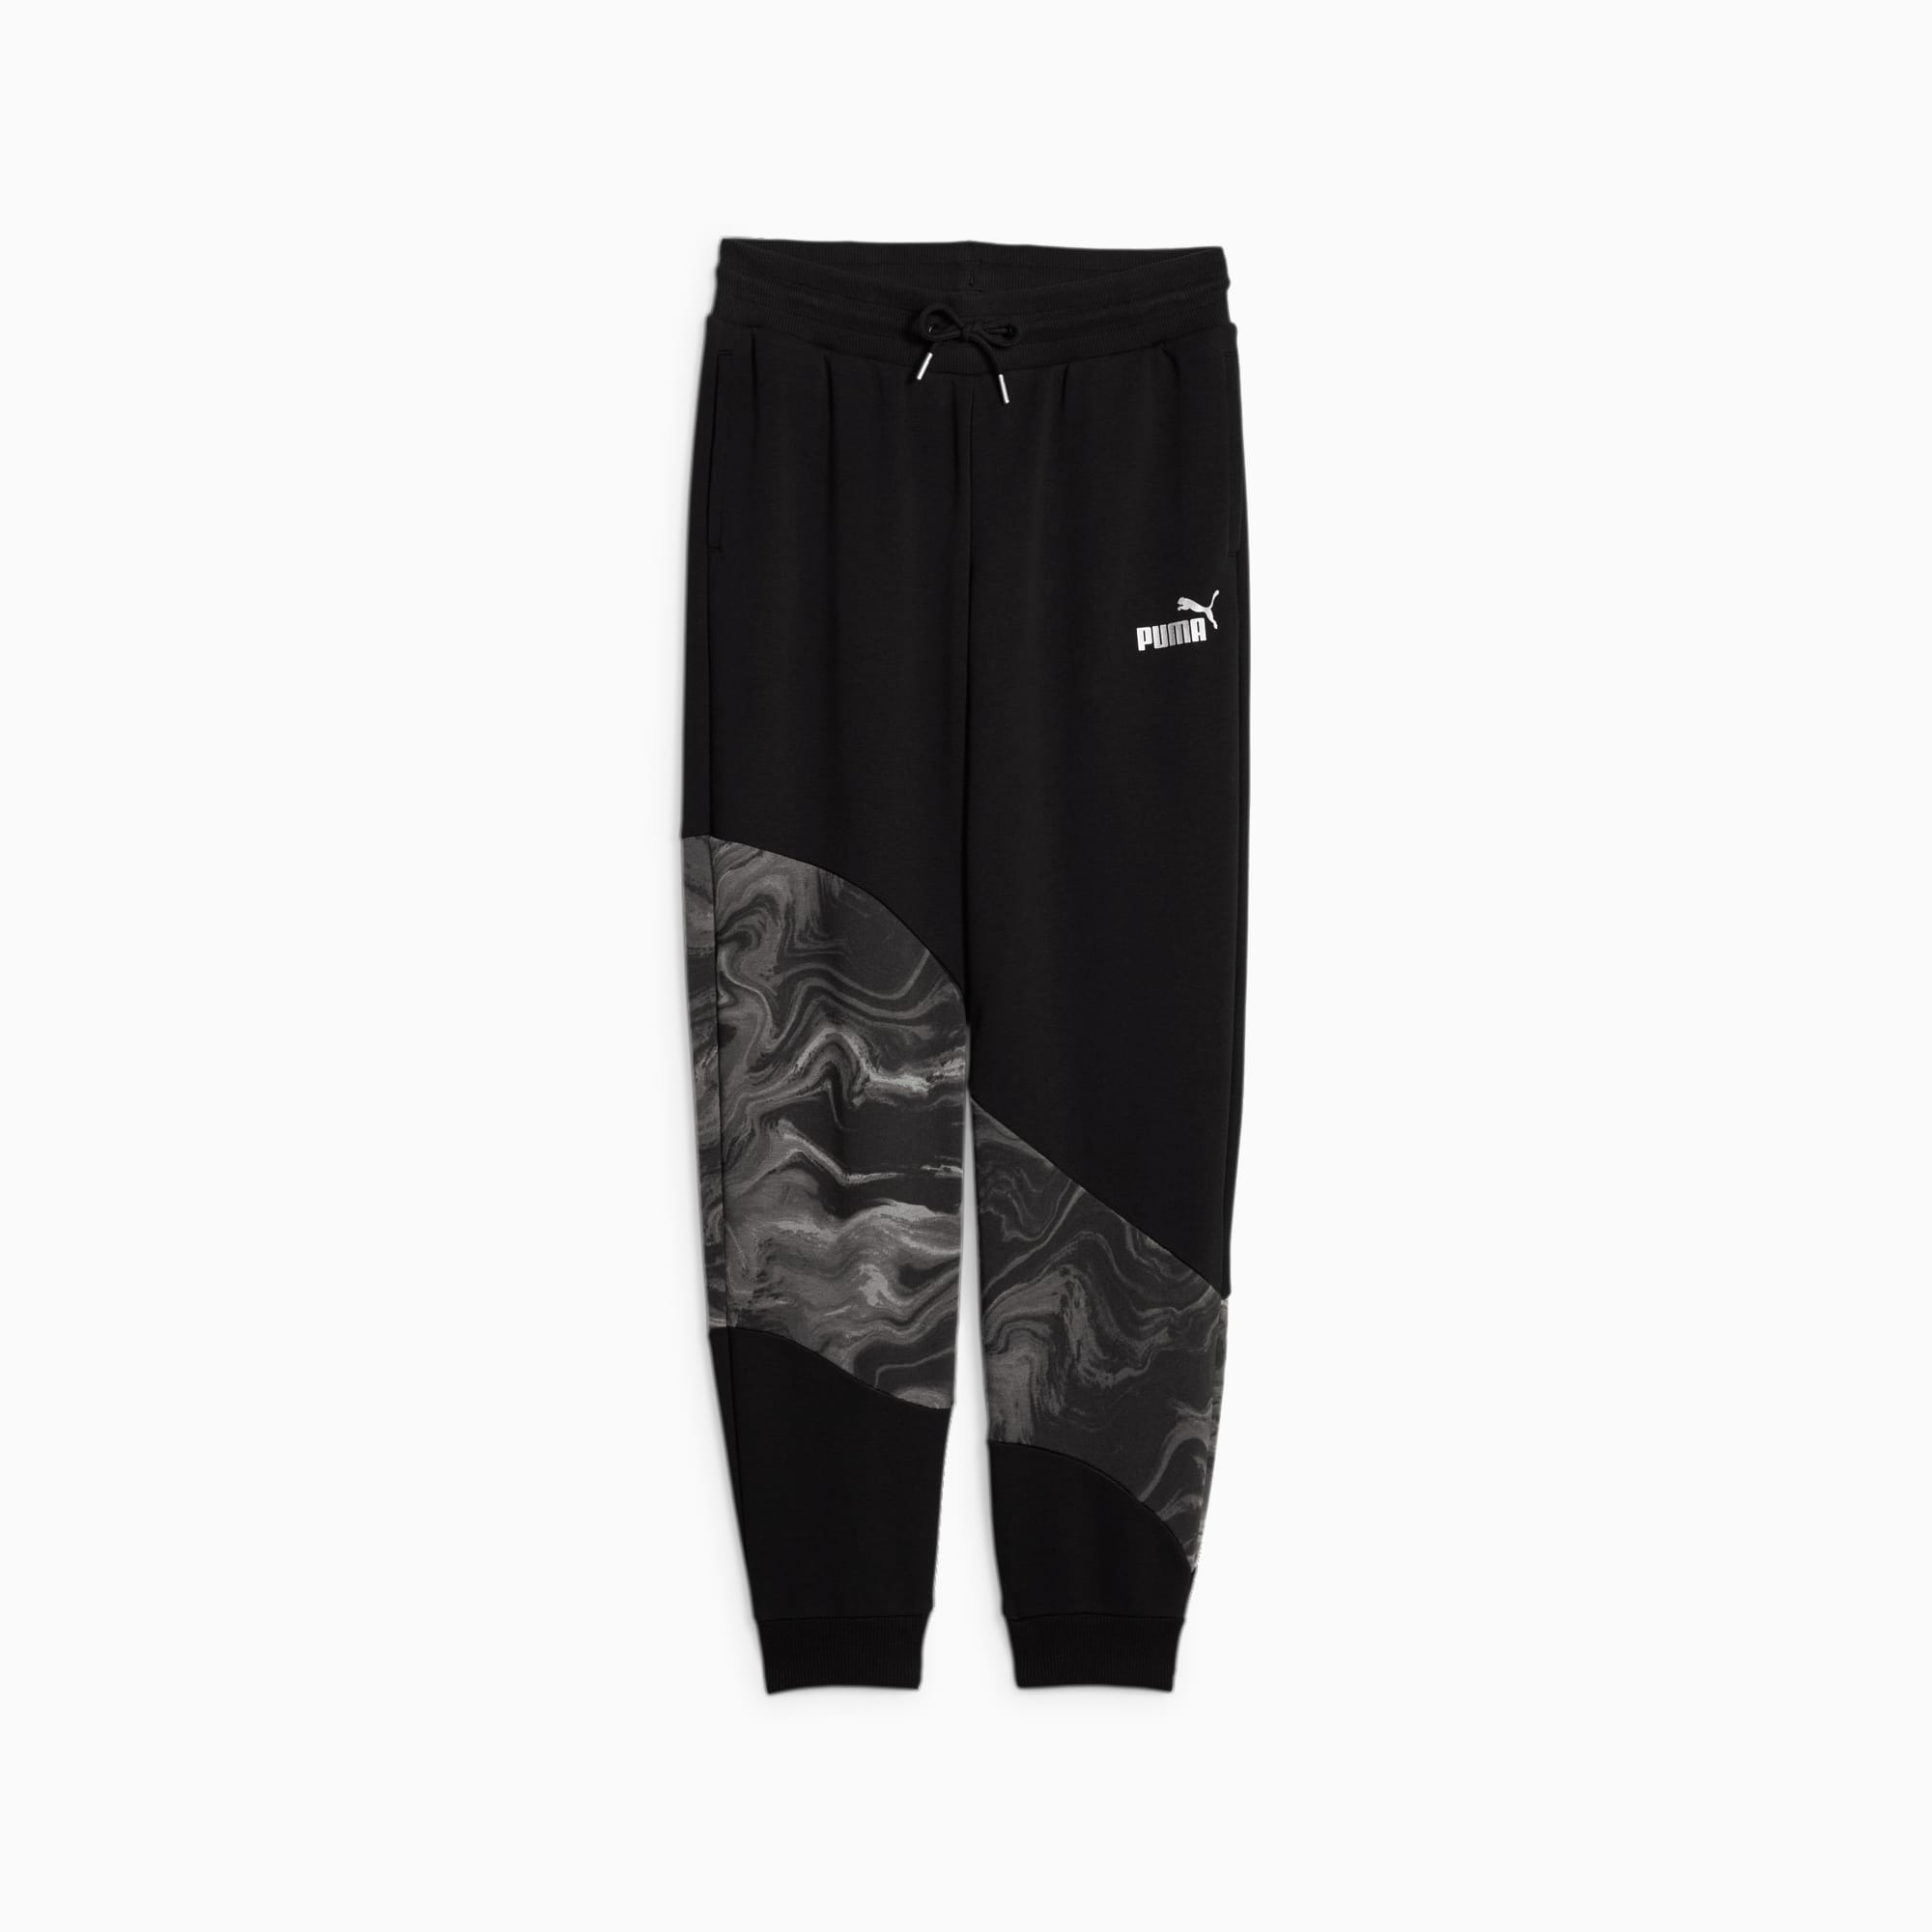 PUMA Power Marbleized Youth Sweatpants, Black, Size 140, Clothing